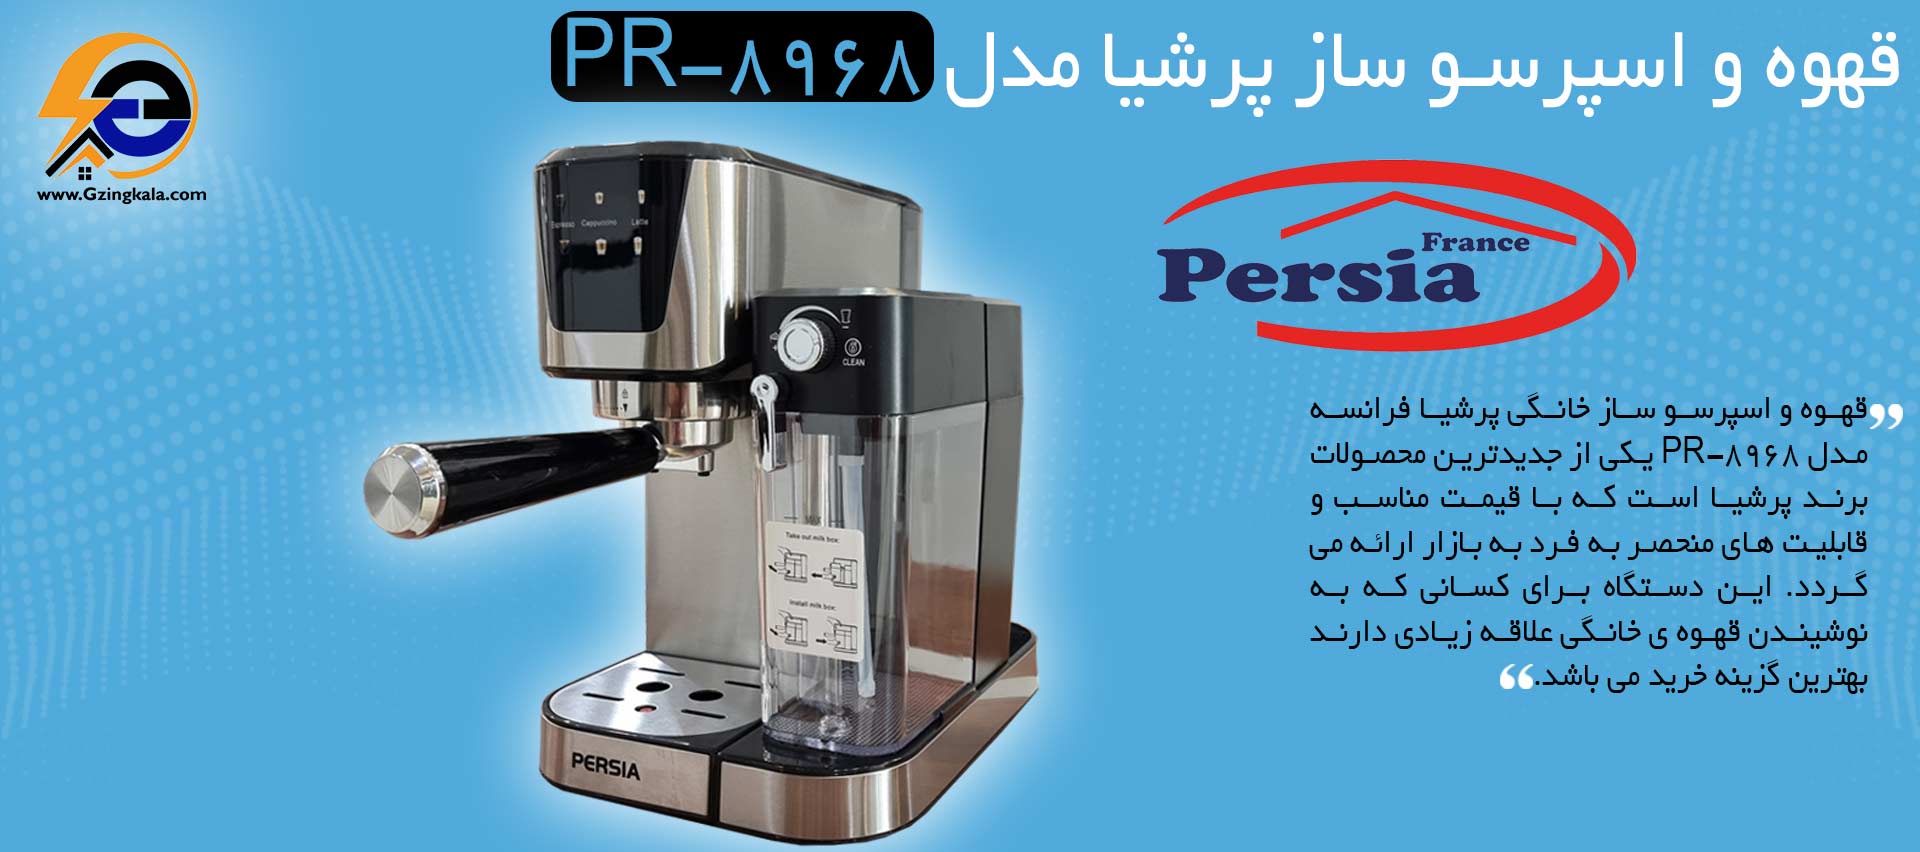 قهوه و اسپرسو ساز پرشیا مدل PR-8968